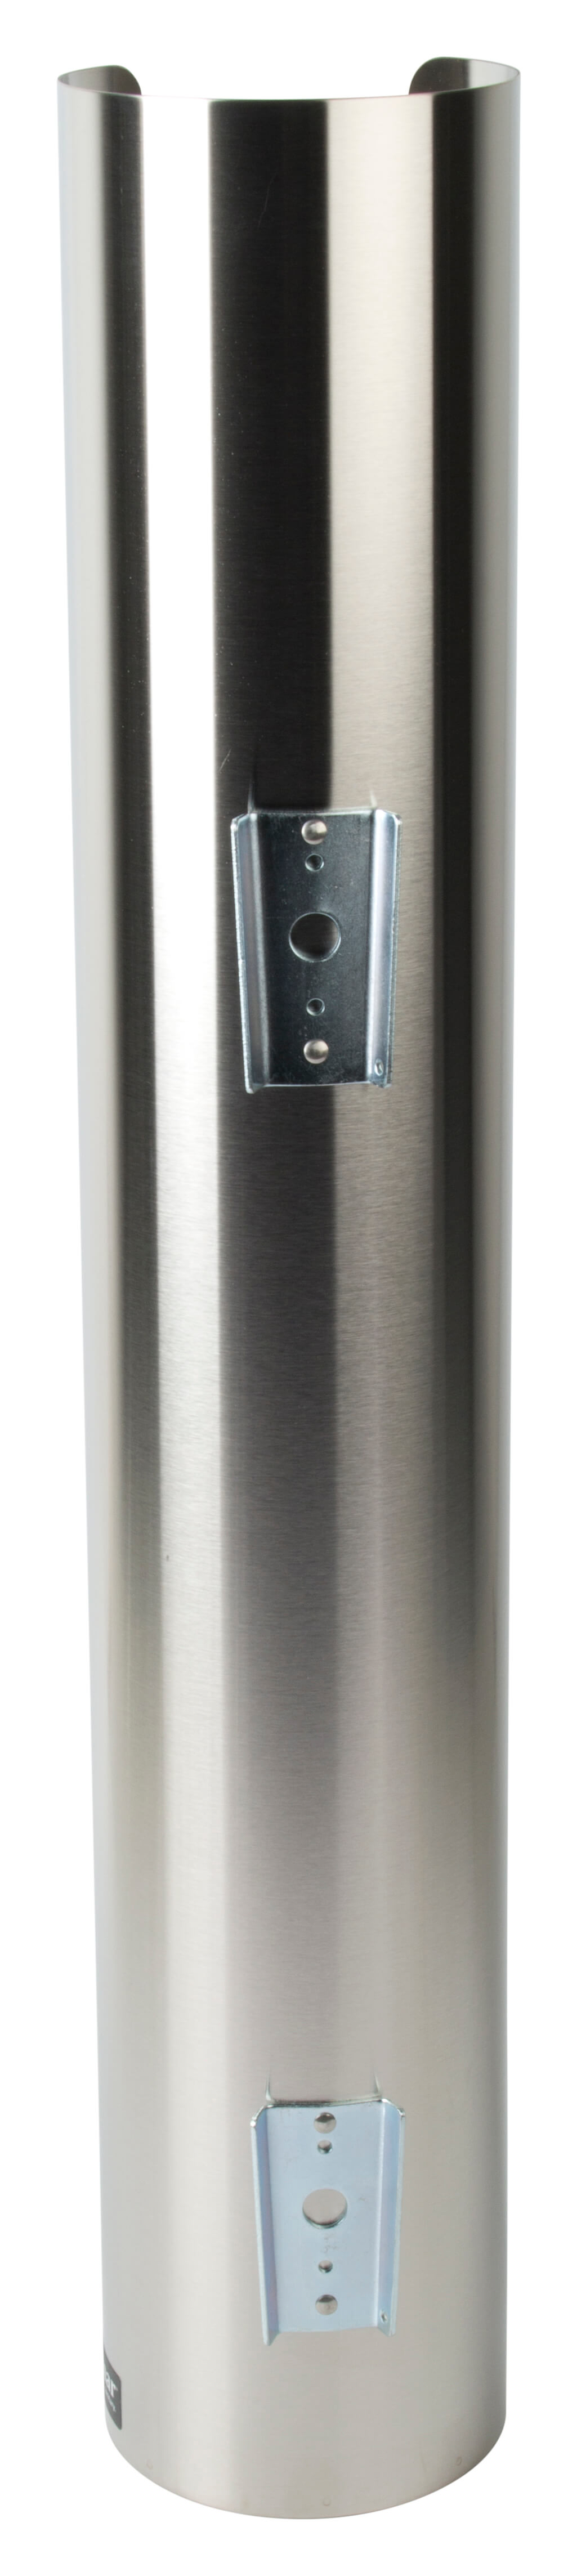 Lid Dispenser, stainless steel - 101mm